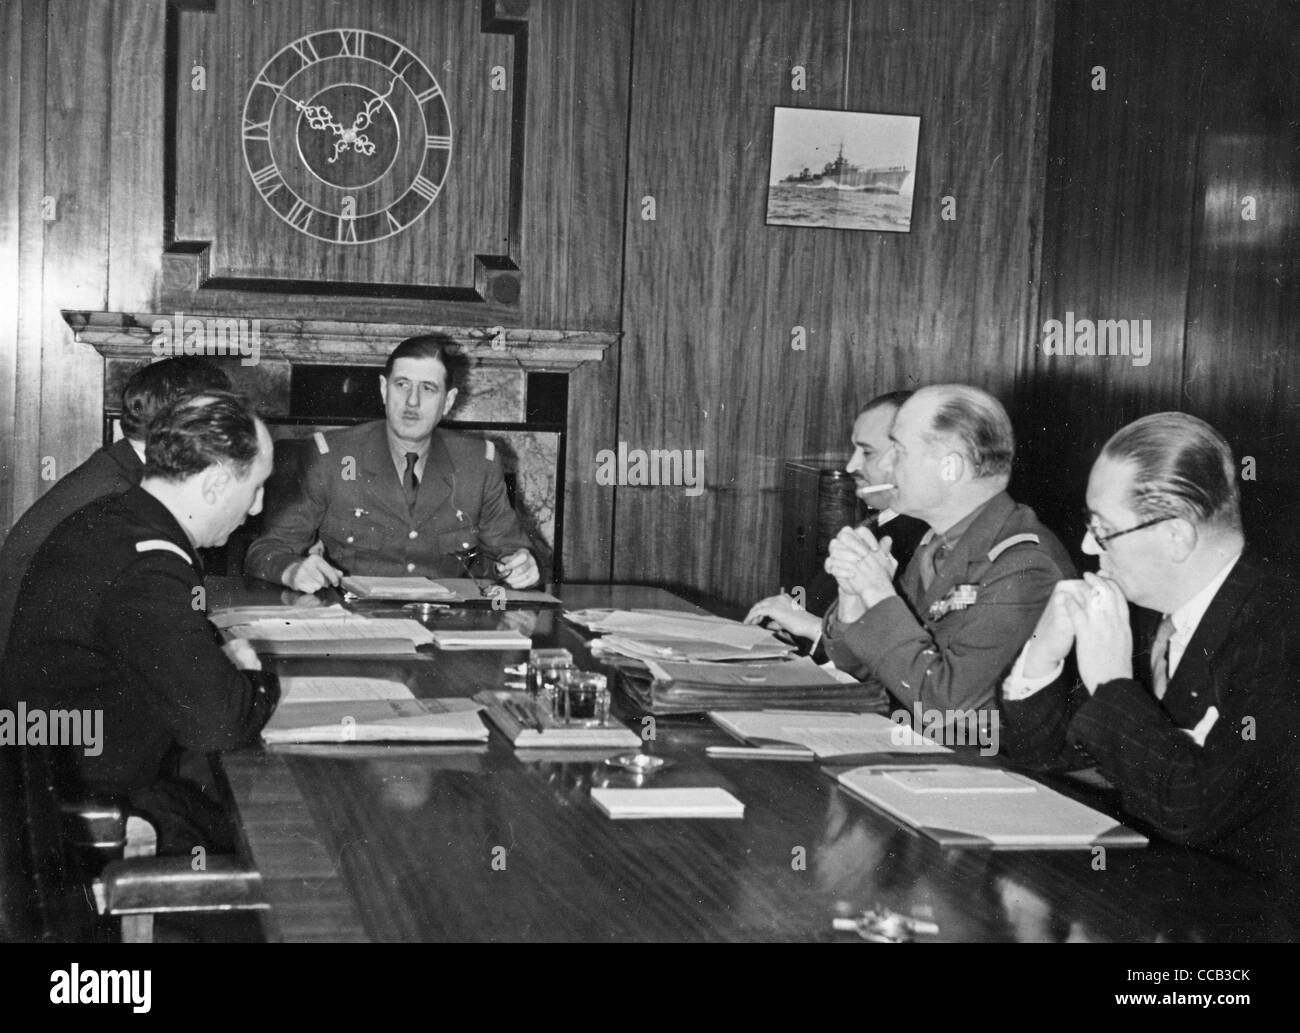 CHARLES DE GAULLE preside una reunión de la Francia Libre Comando en 3/4 Jardines Carlton, Londres en 1941 Foto de stock